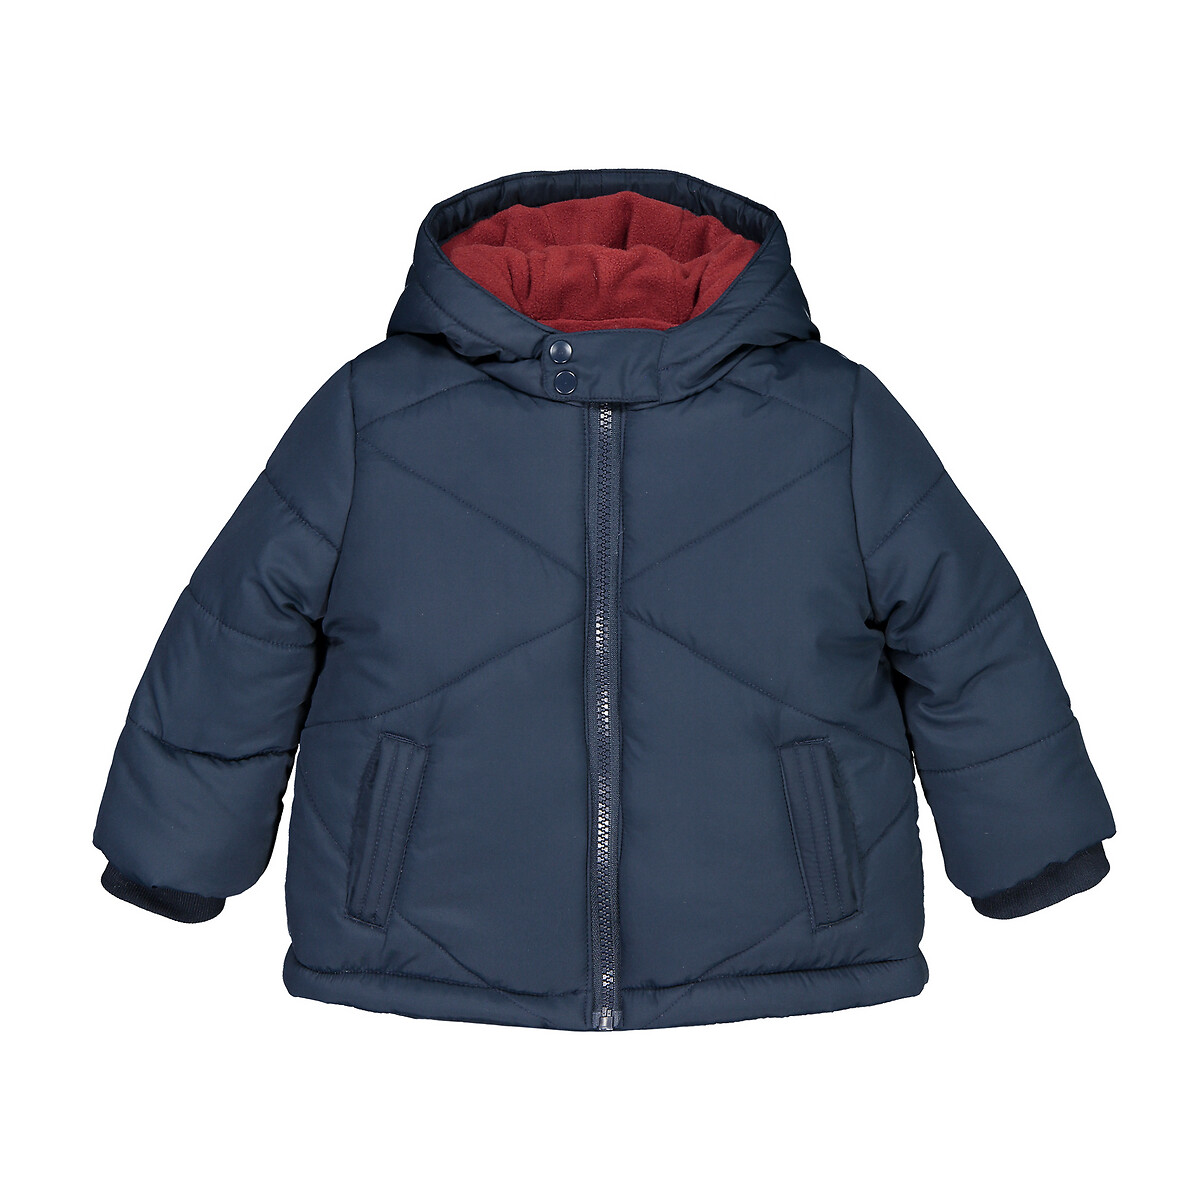 Куртка La Redoute Стеганая с капюшоном подкладка из флиса 3 мес-3лет 2 года - 86 см синий, размер 2 года - 86 см - фото 1